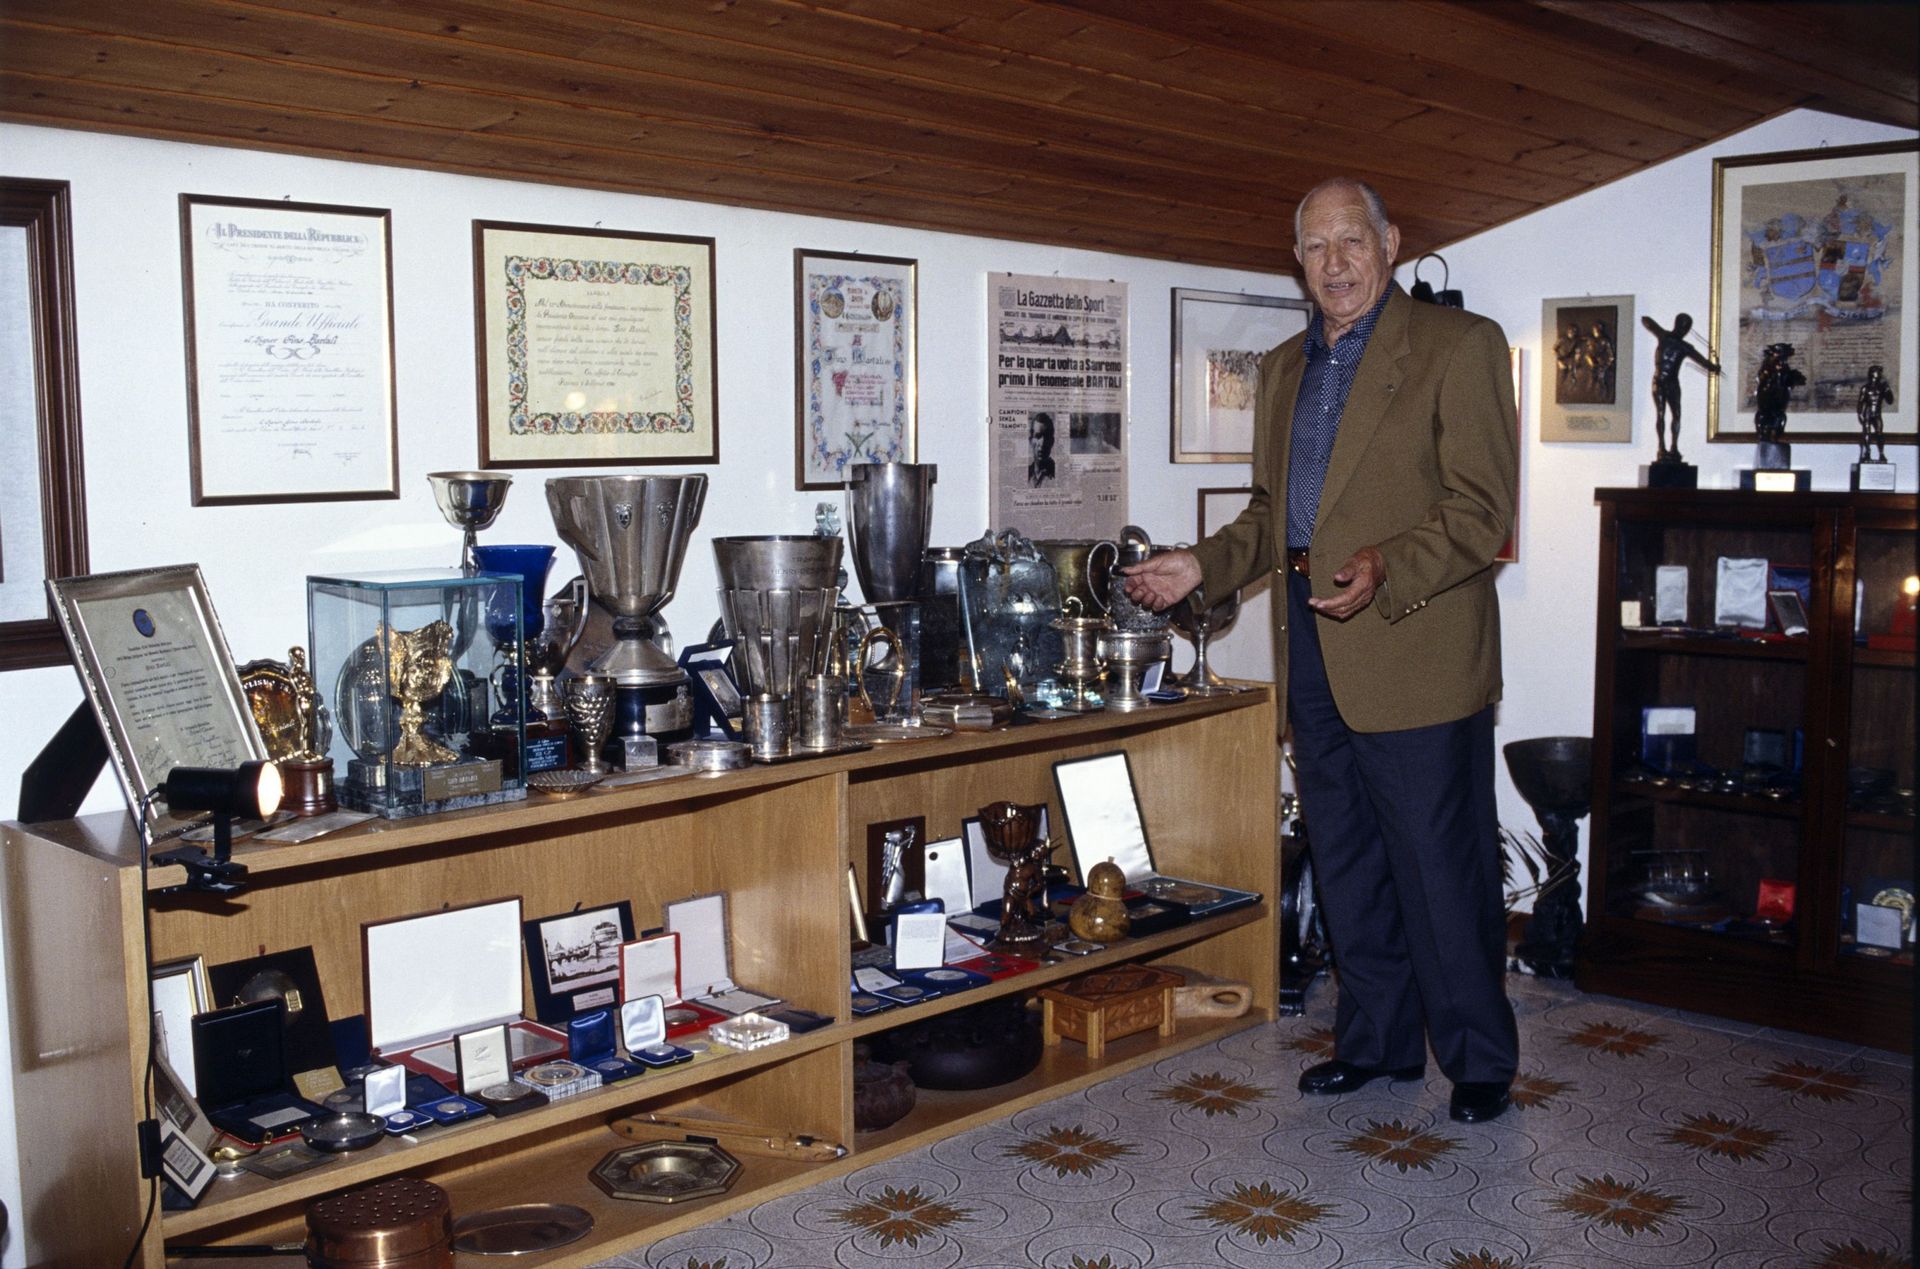 Gino chez lui, présentant ses nombreuses récompenses de champion cycliste en 1994…